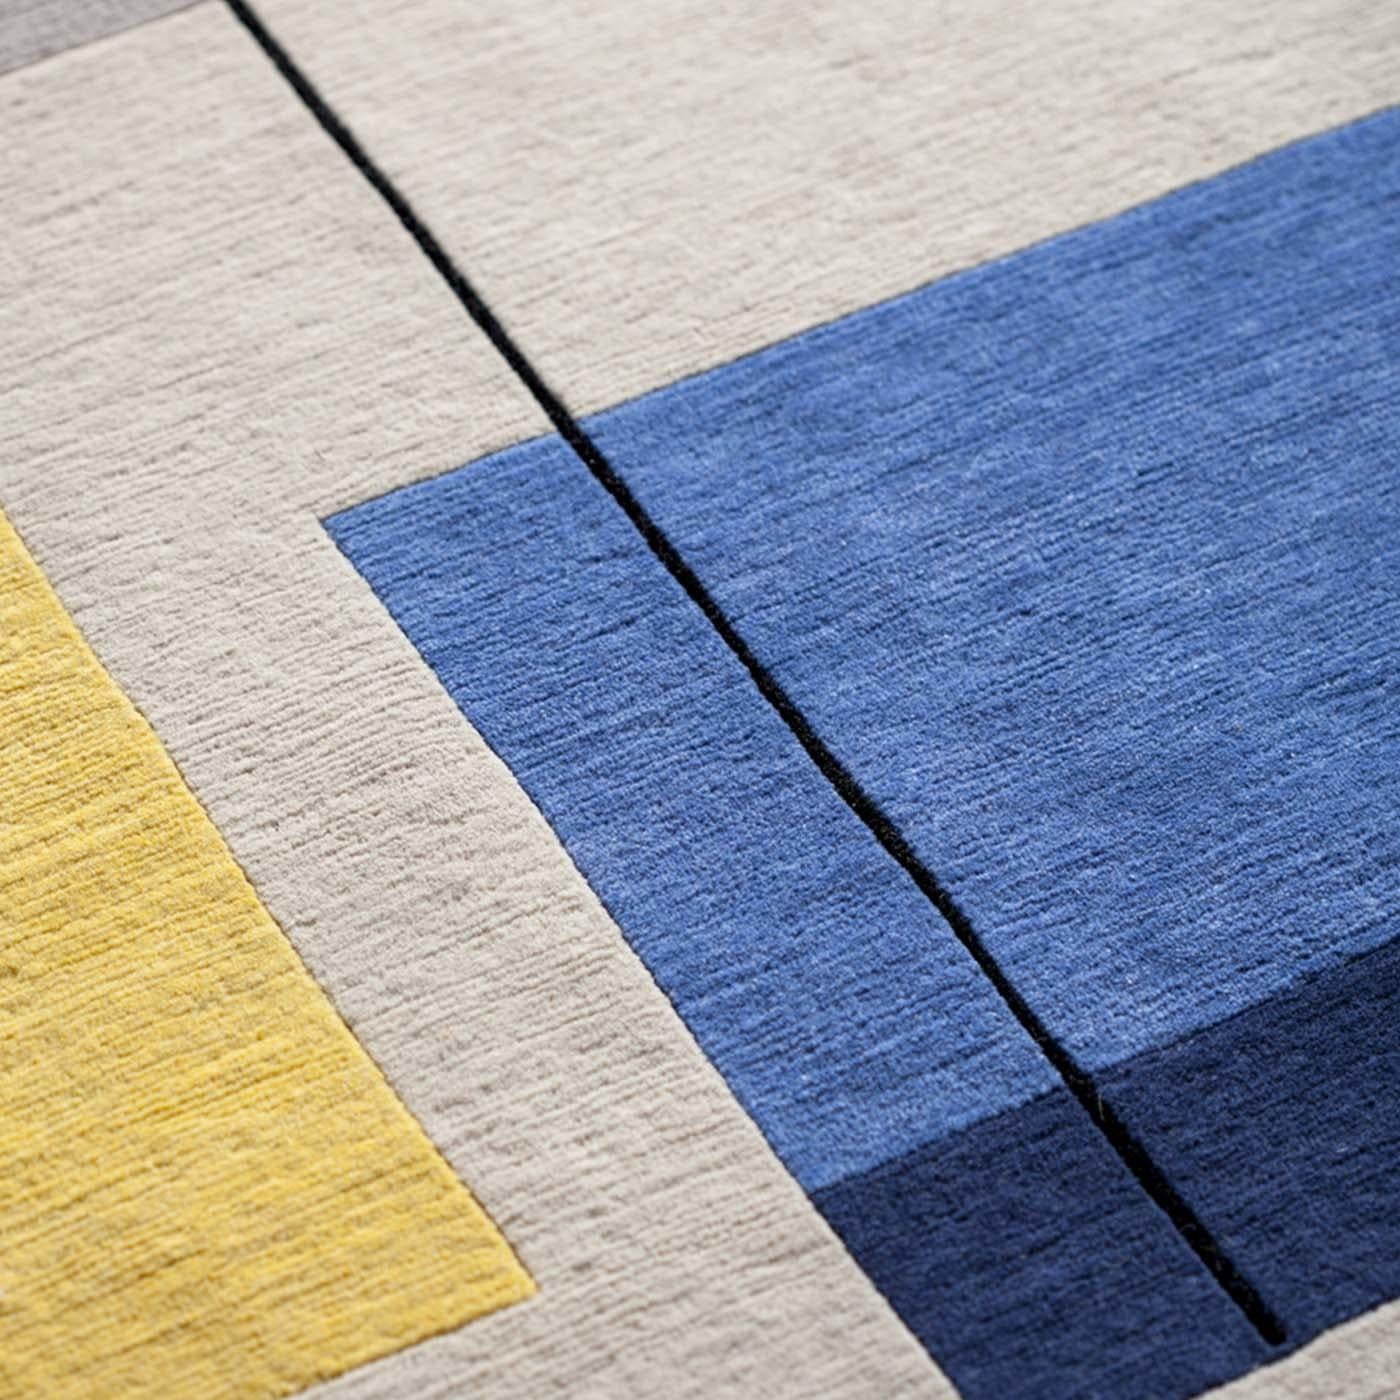 La Composizione 57 10 est née du désir de produire des tapis reprenant les formes pures et la palette de Manlio Rho, en reproduisant la chaleur de ses couleurs empruntées à la campagne lombarde. Le tapis (300 x 200 cm) devient une toile sur laquelle